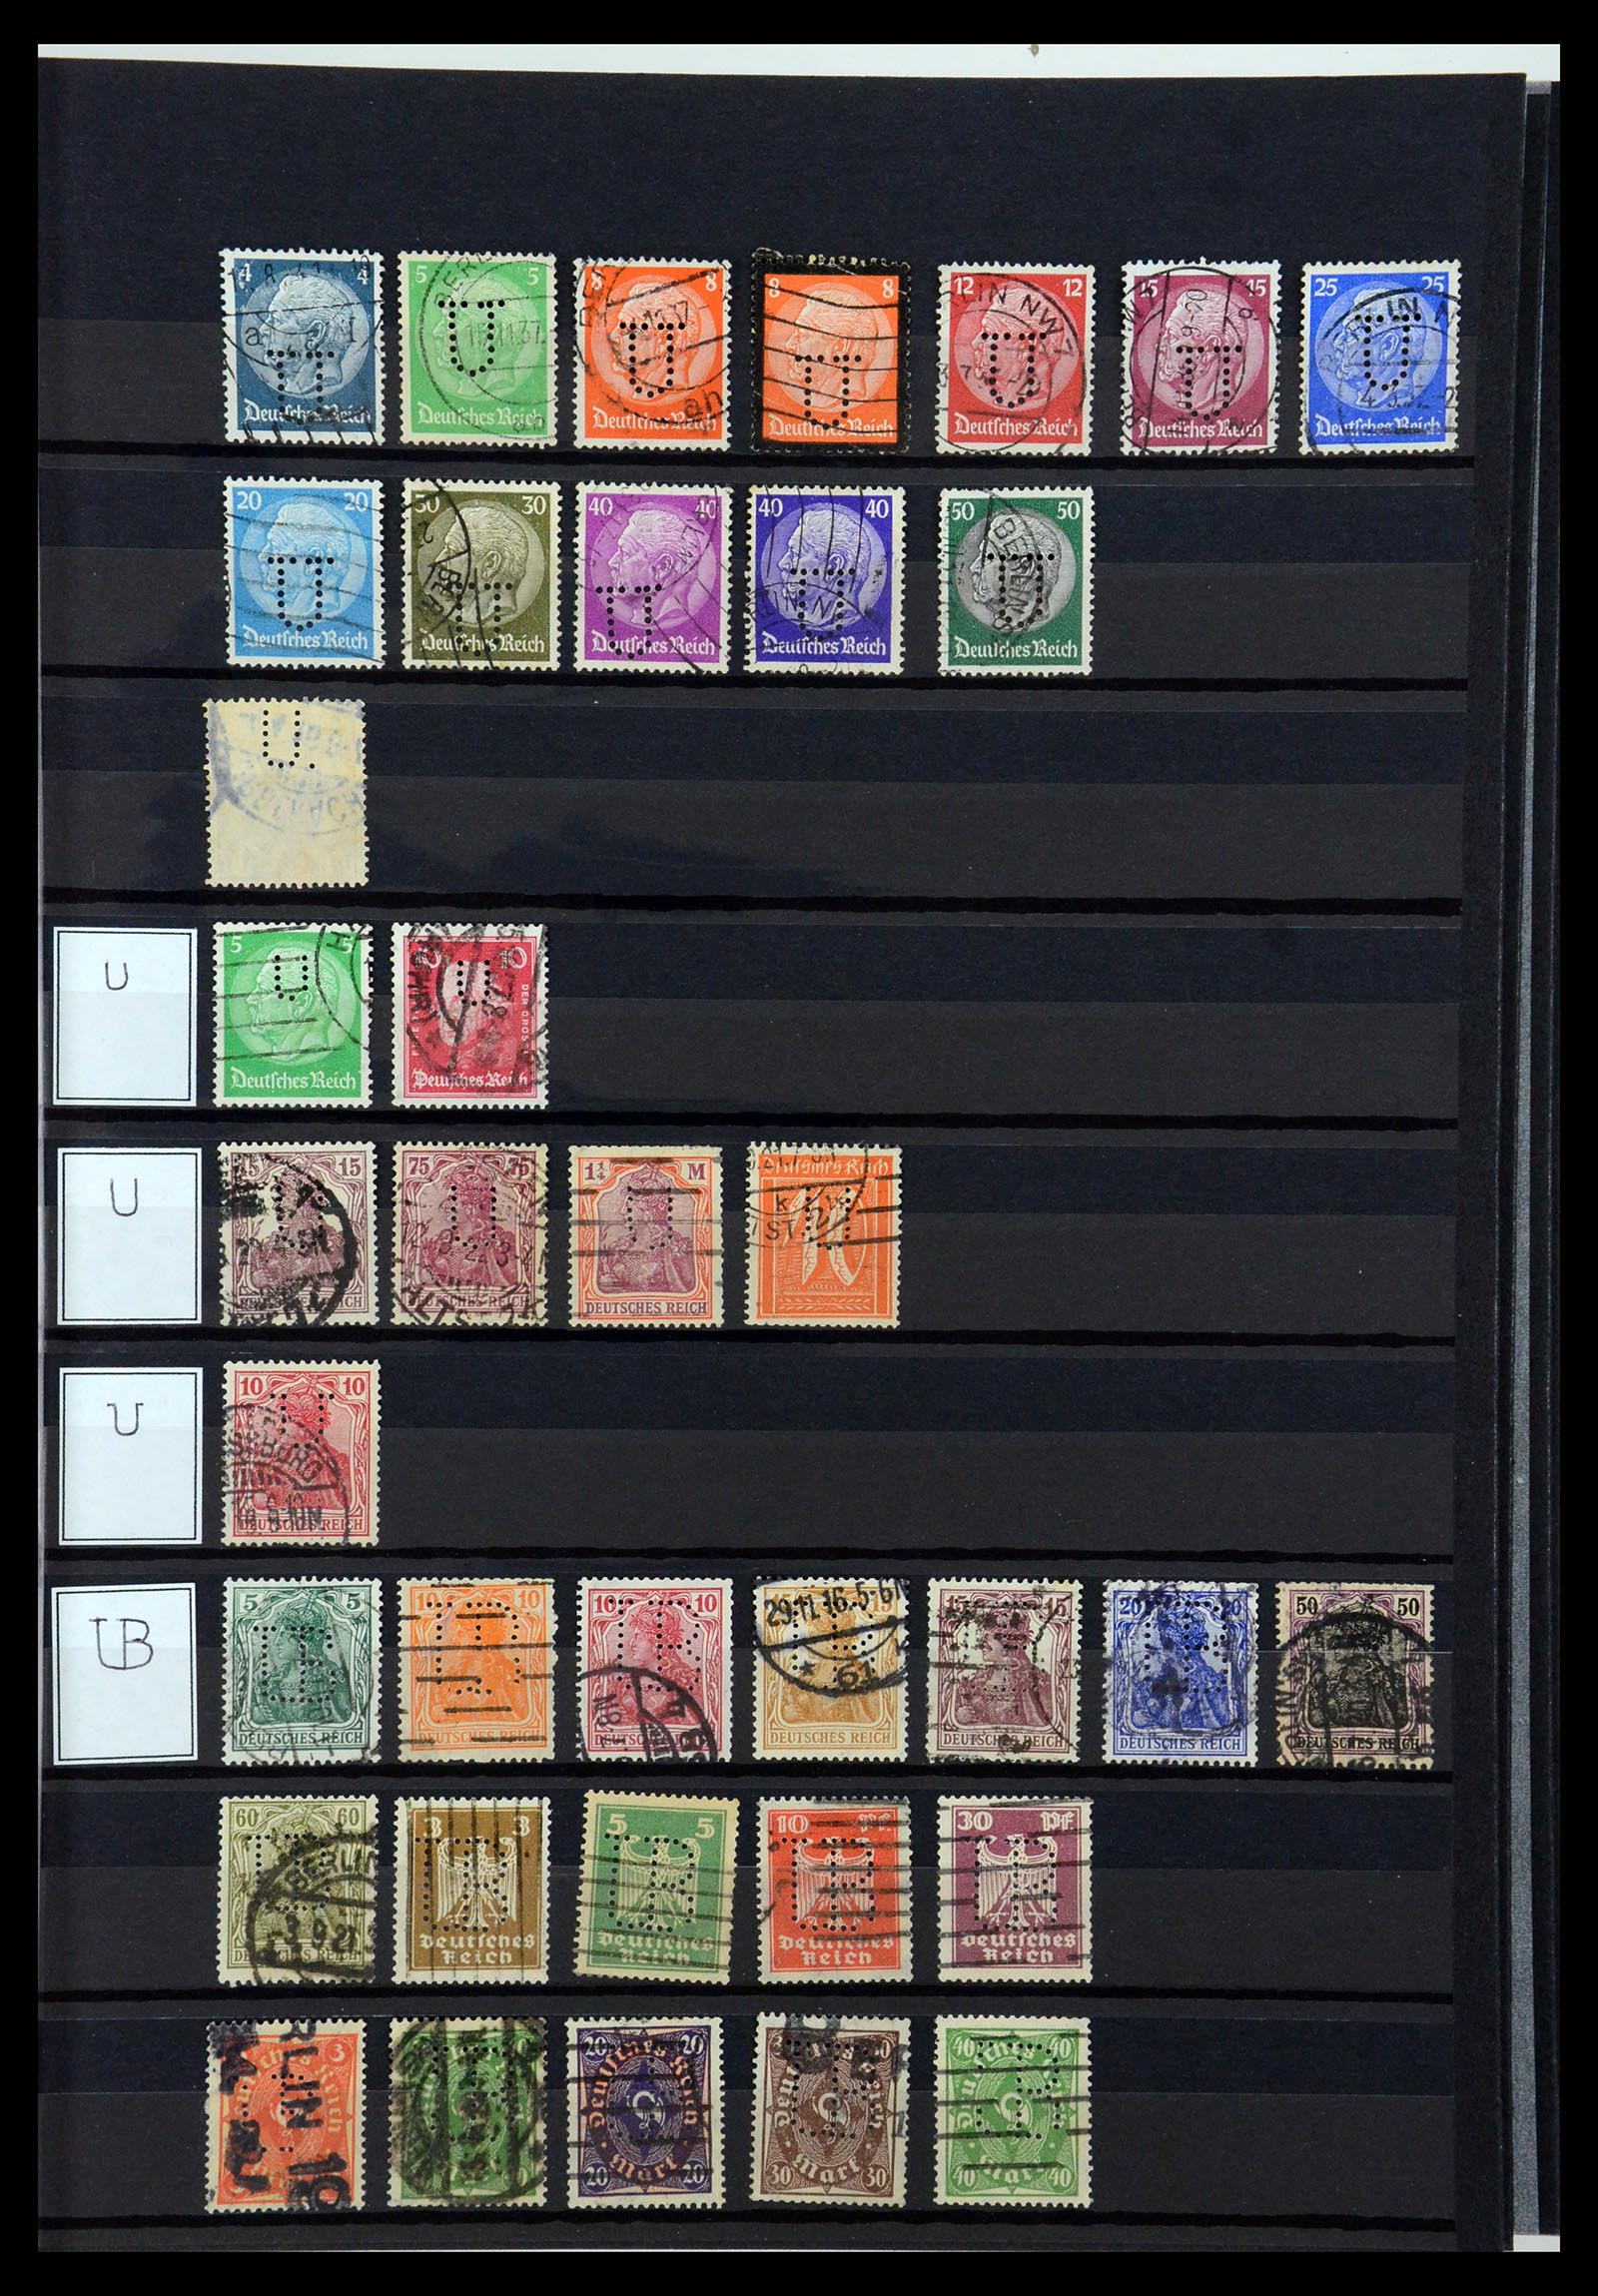 36405 320 - Stamp collection 36405 German Reich perfins 1880-1945.